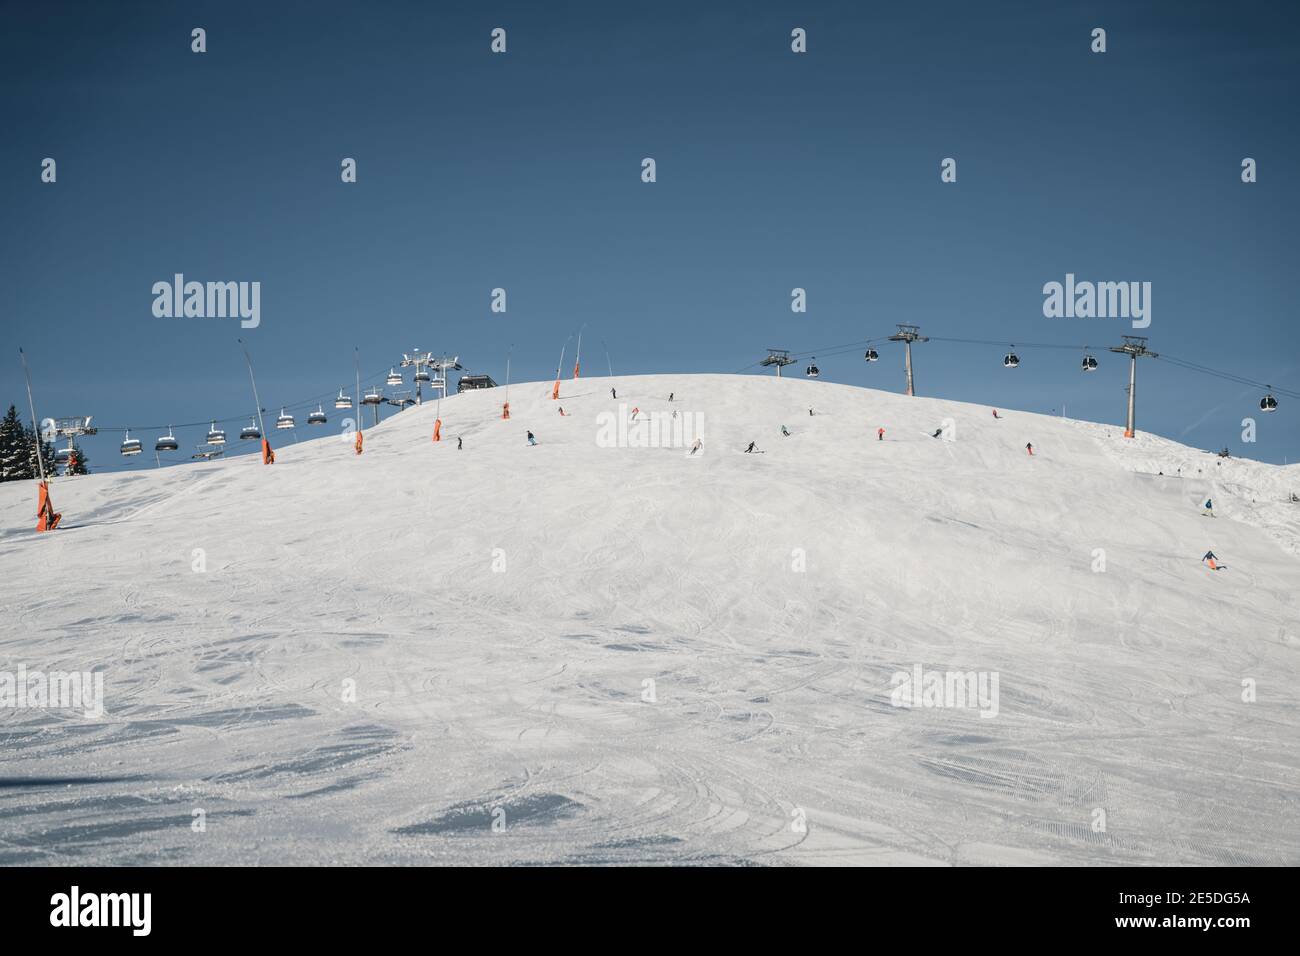 Grupo de personas, esquí en una montaña, Zell am See, Salzburgo, Austria Foto de stock